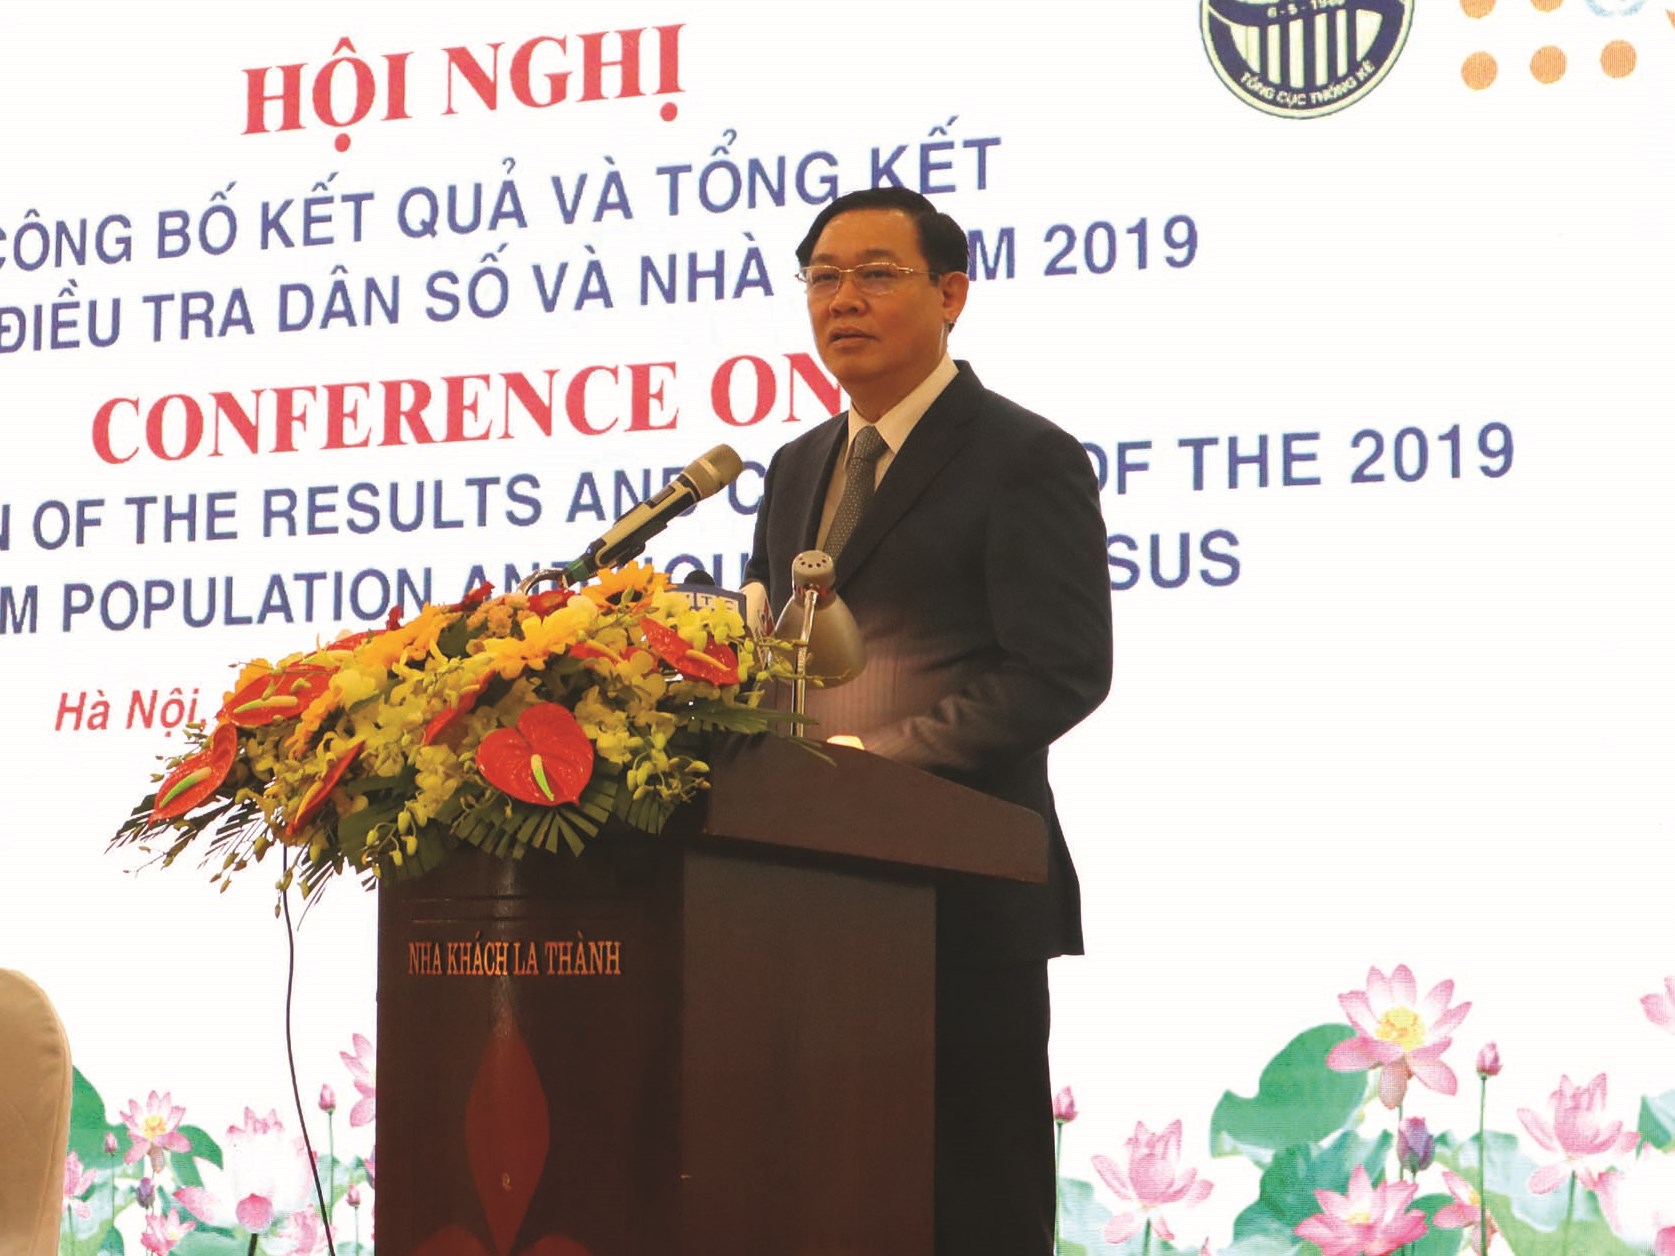 Phó Thủ tướng Vương Đình Huệ, Trưởng Ban Chỉ đạo Tổng điều tra dân số và nhà ở Trung ương phát biểu tại Hội nghị